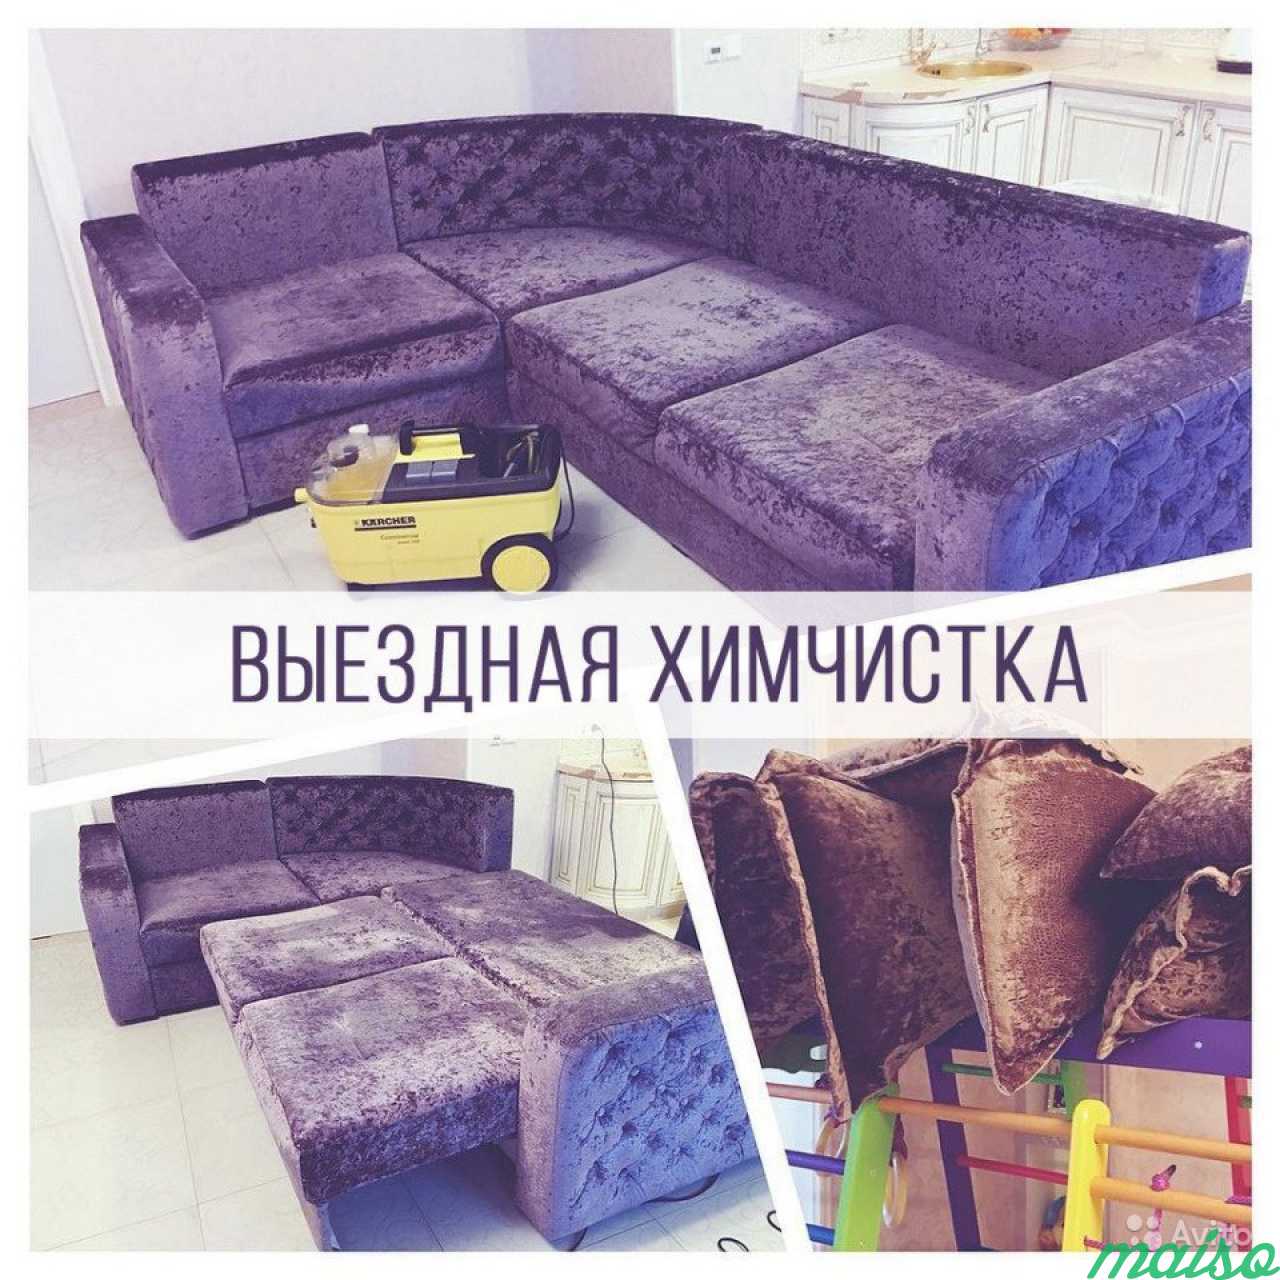 Химчистка ковров, мягкой мебели, матрасов в Санкт-Петербурге. Фото 1